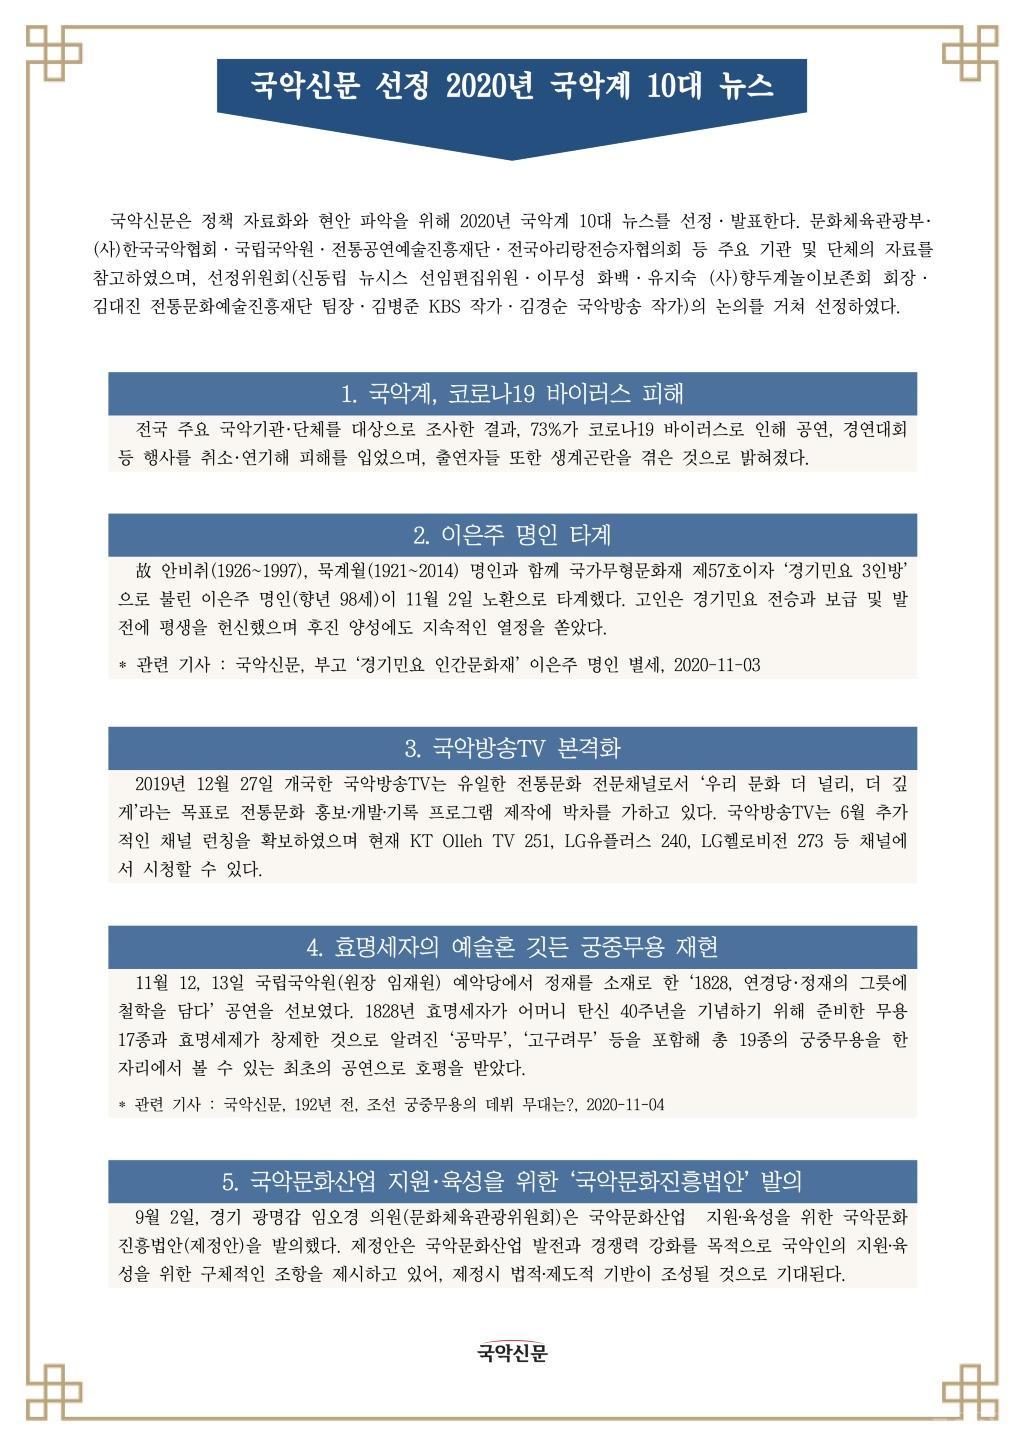 국악신문 선정, 2020년 국악계 10대 뉴스-1.jpg